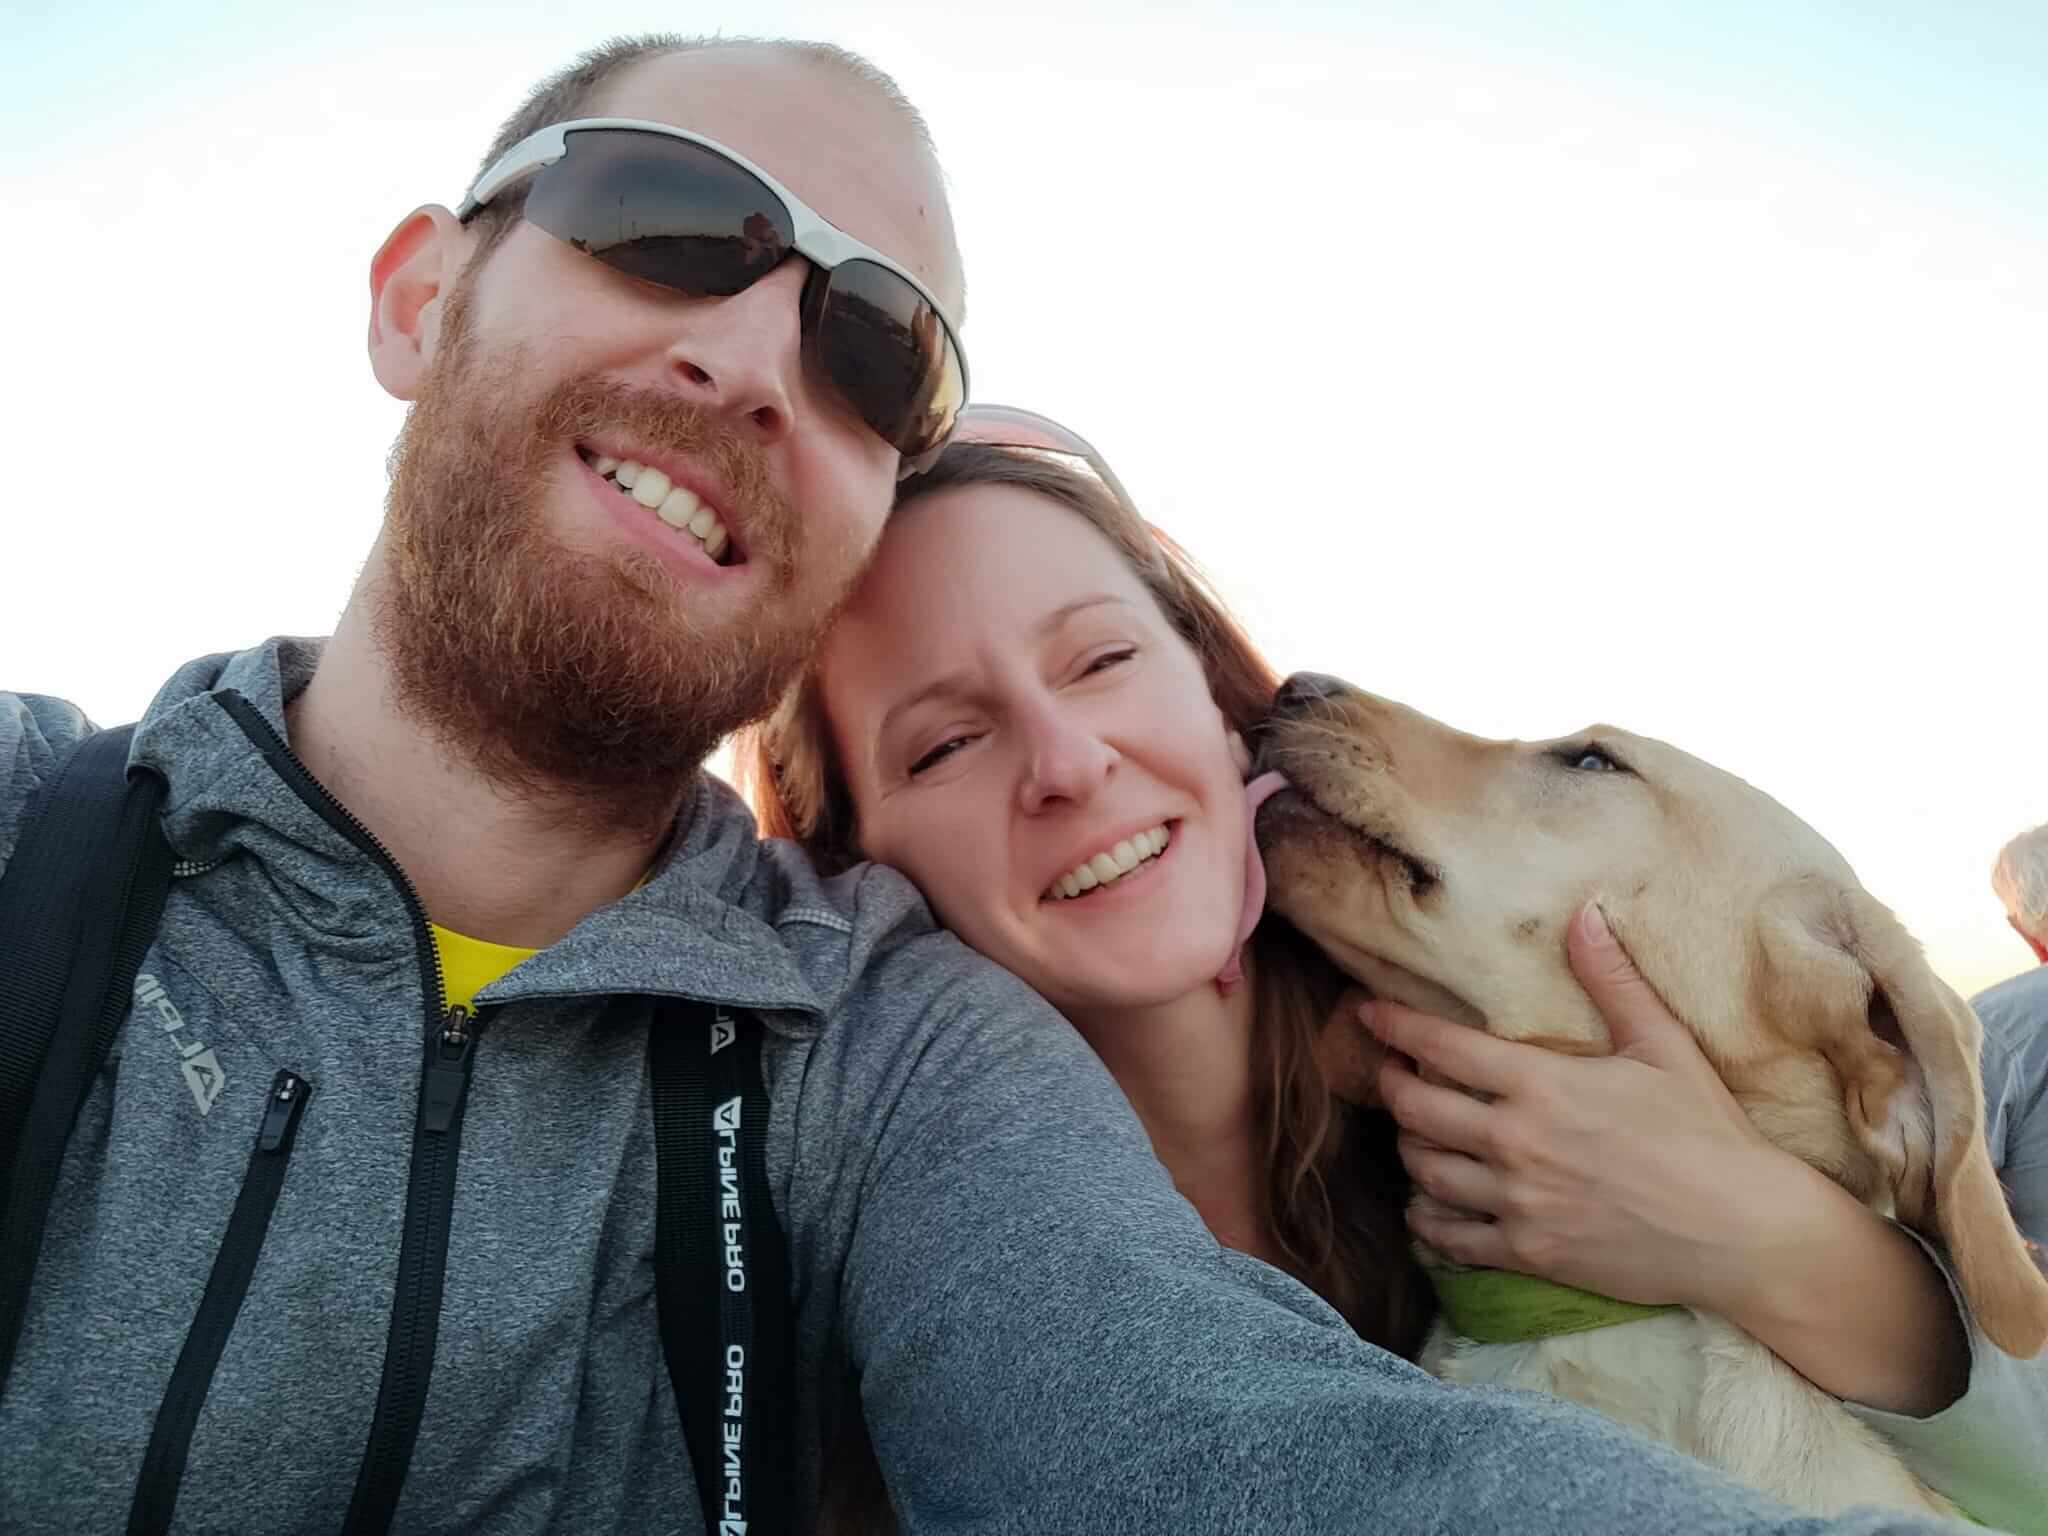 Selfie fotografia na ktorej je vychovávateľka so svojim partnerom a žltá labradorka. Obaja sa schuti smejú a labradorka oblizuje svojej vychovávateľke líce.